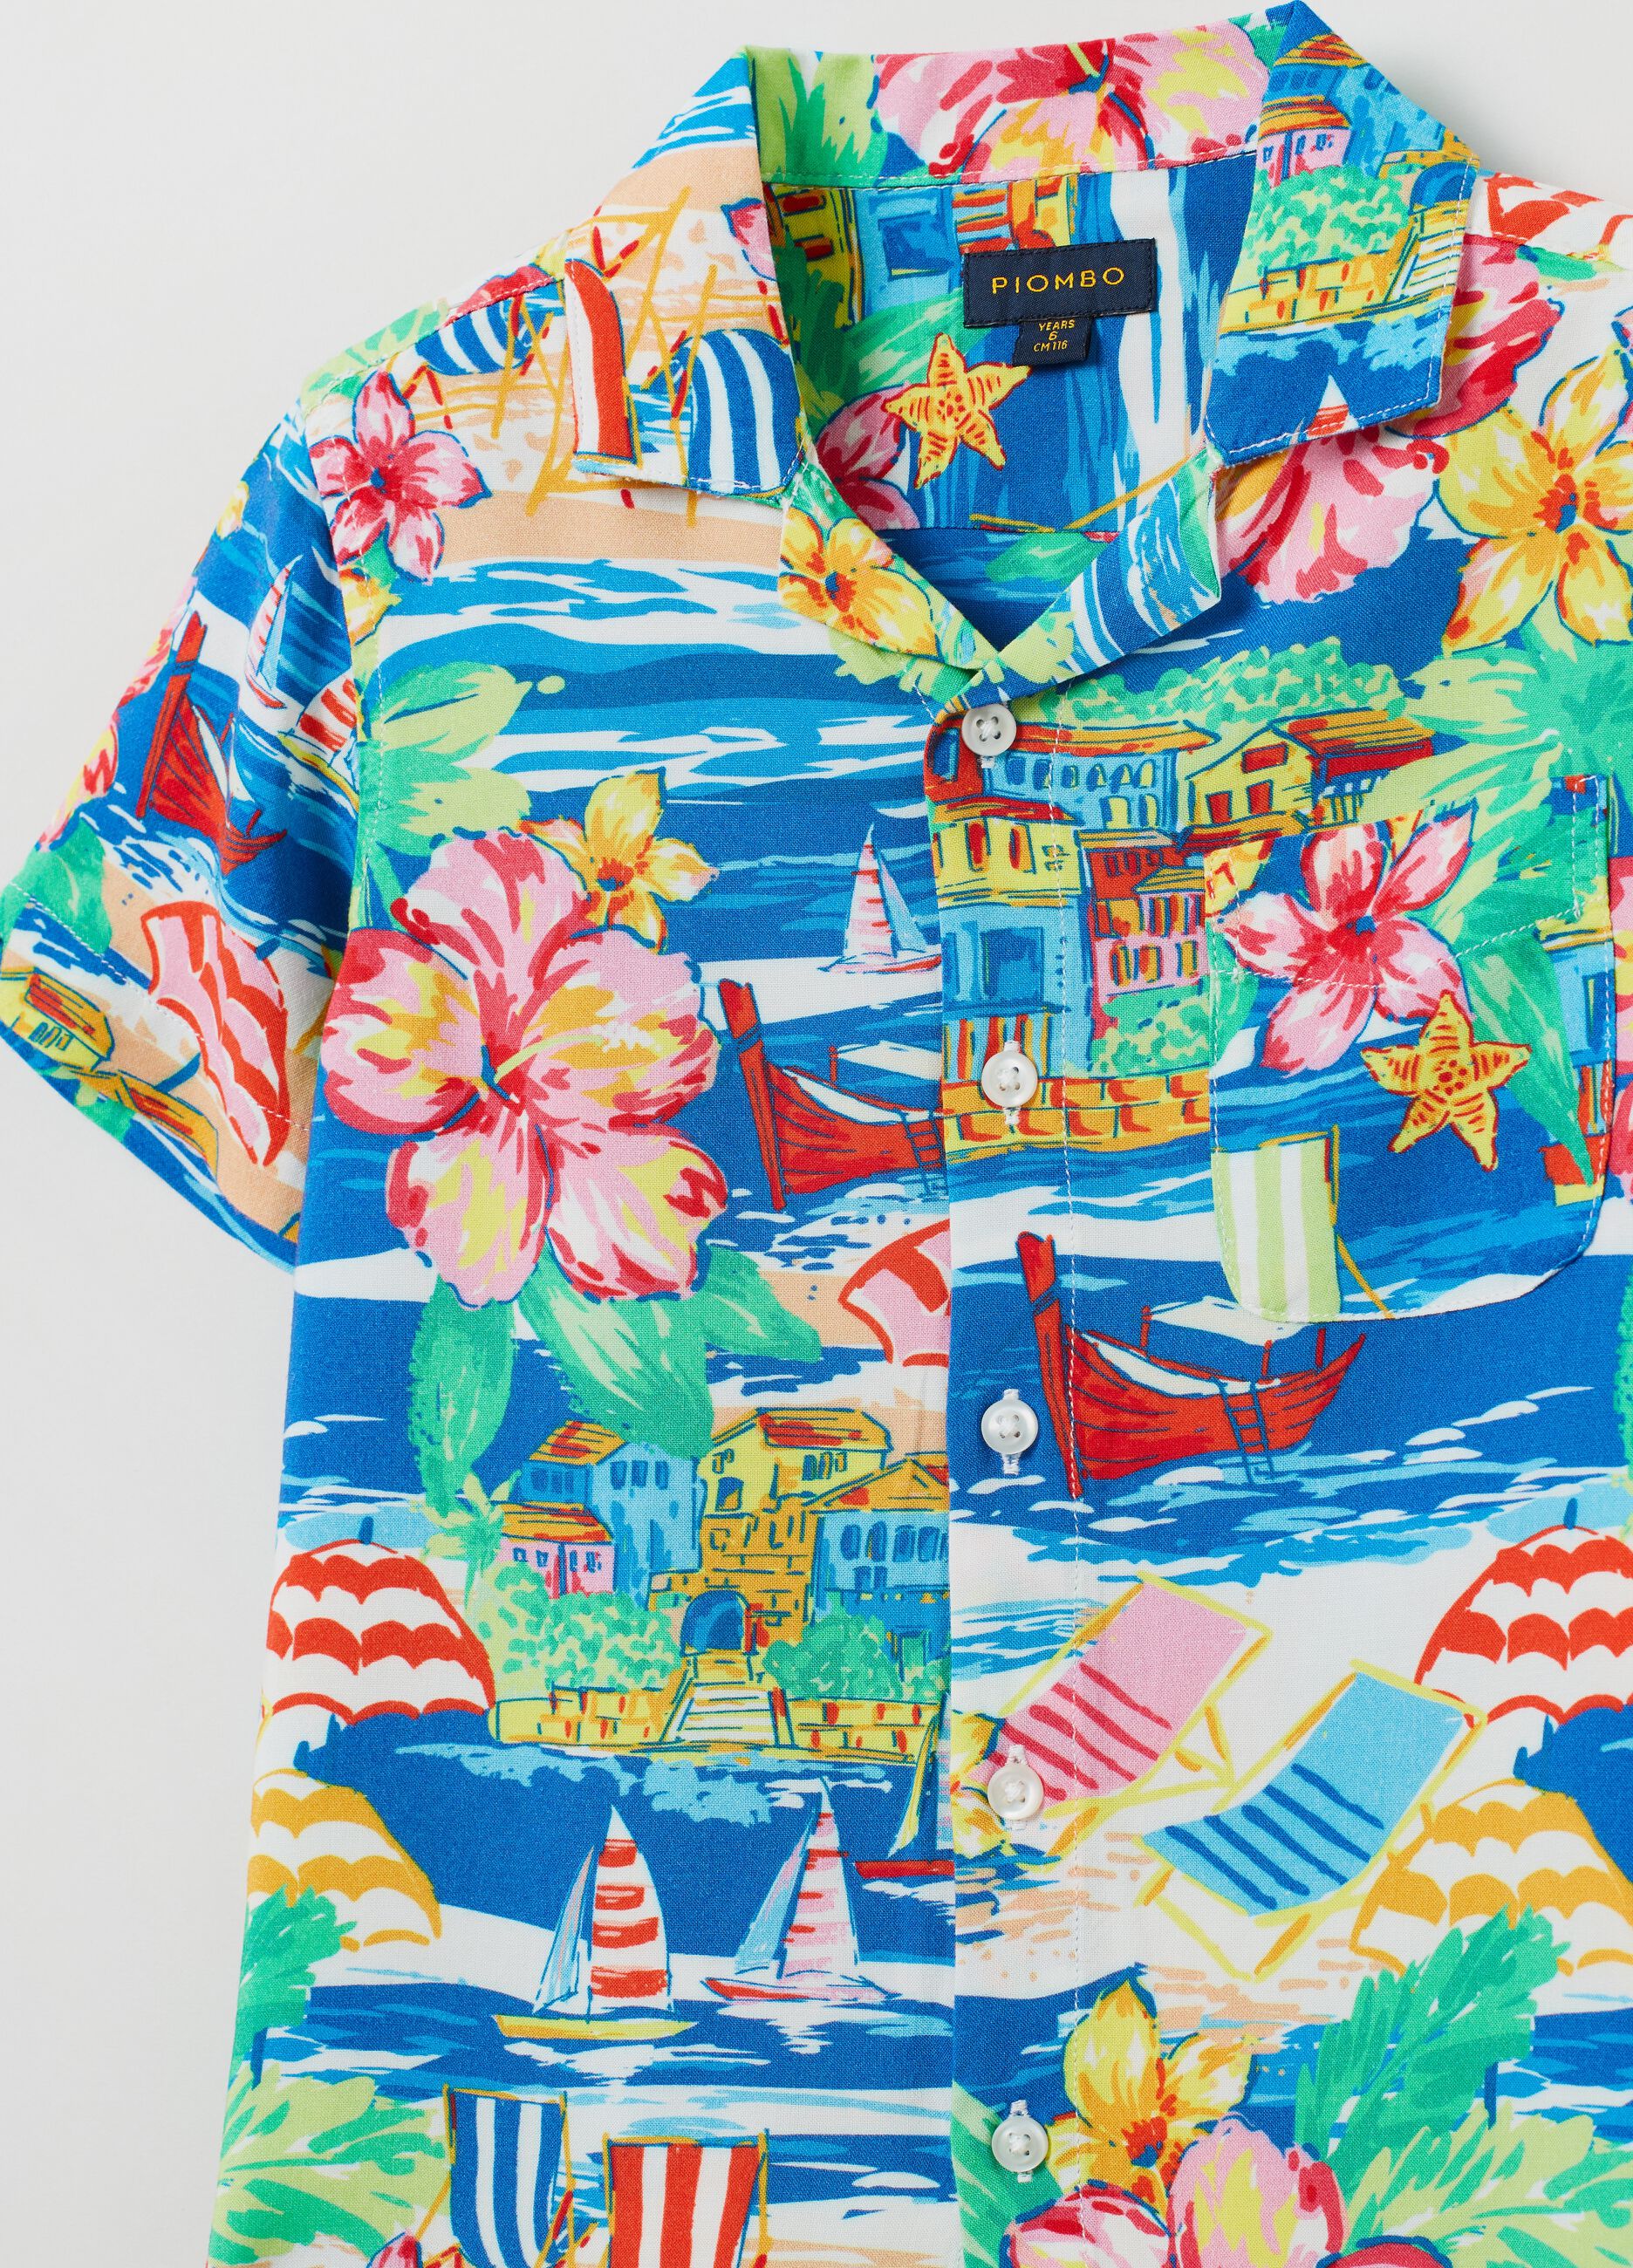 Shirt with Hawaiian print